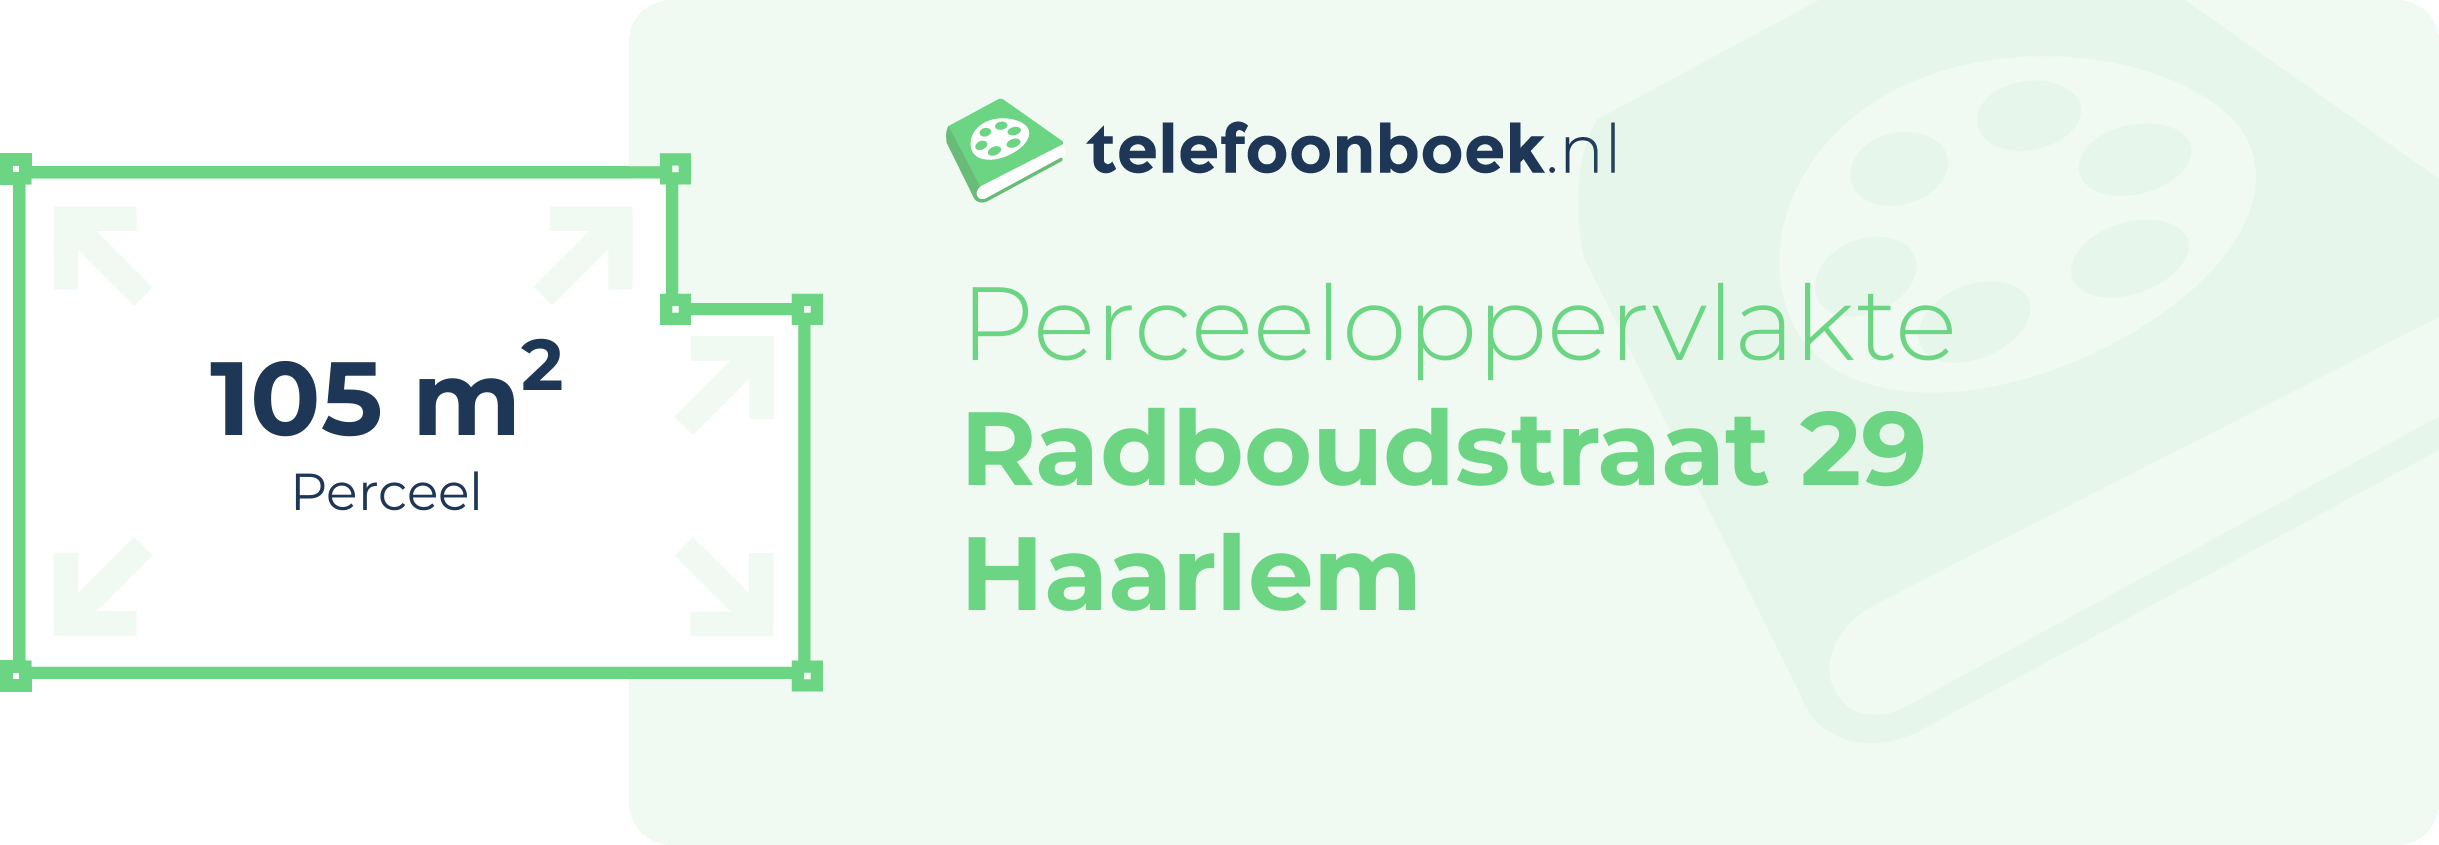 Perceeloppervlakte Radboudstraat 29 Haarlem